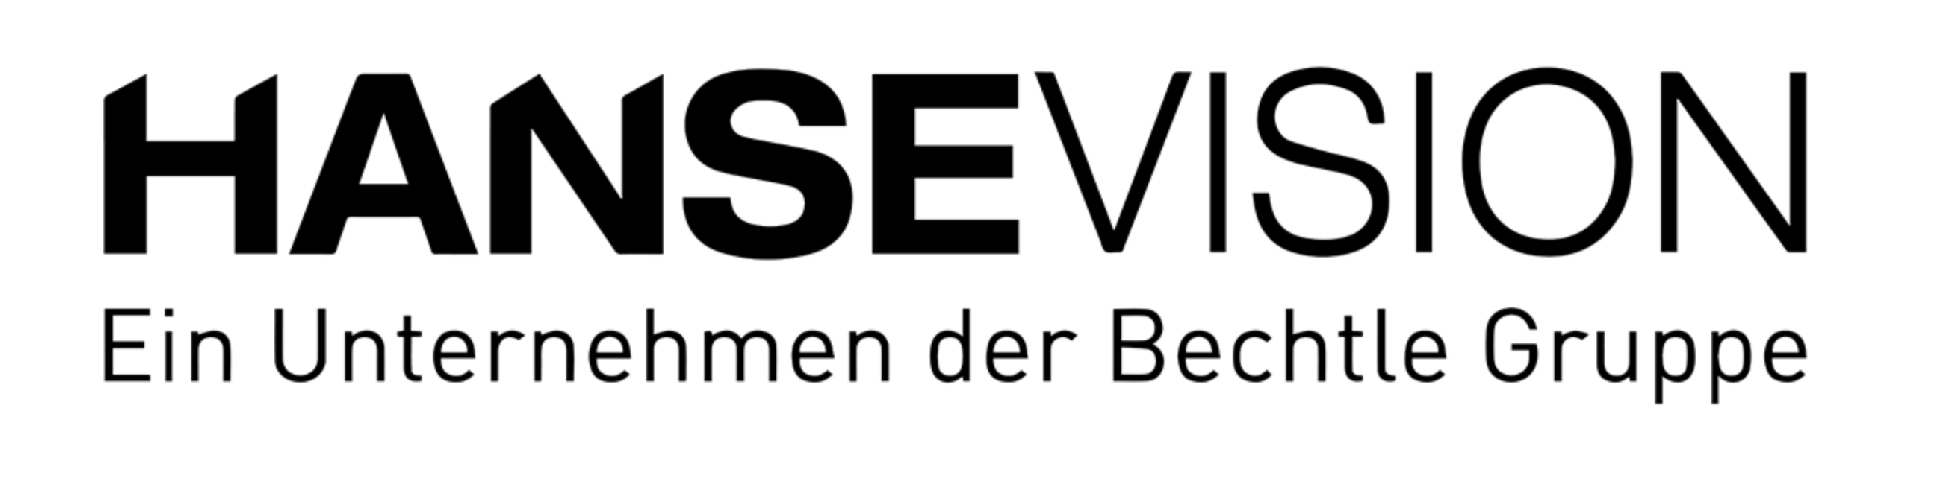 HanseVision GmbH - Ein Unternehmen der Bechtle Gruppe